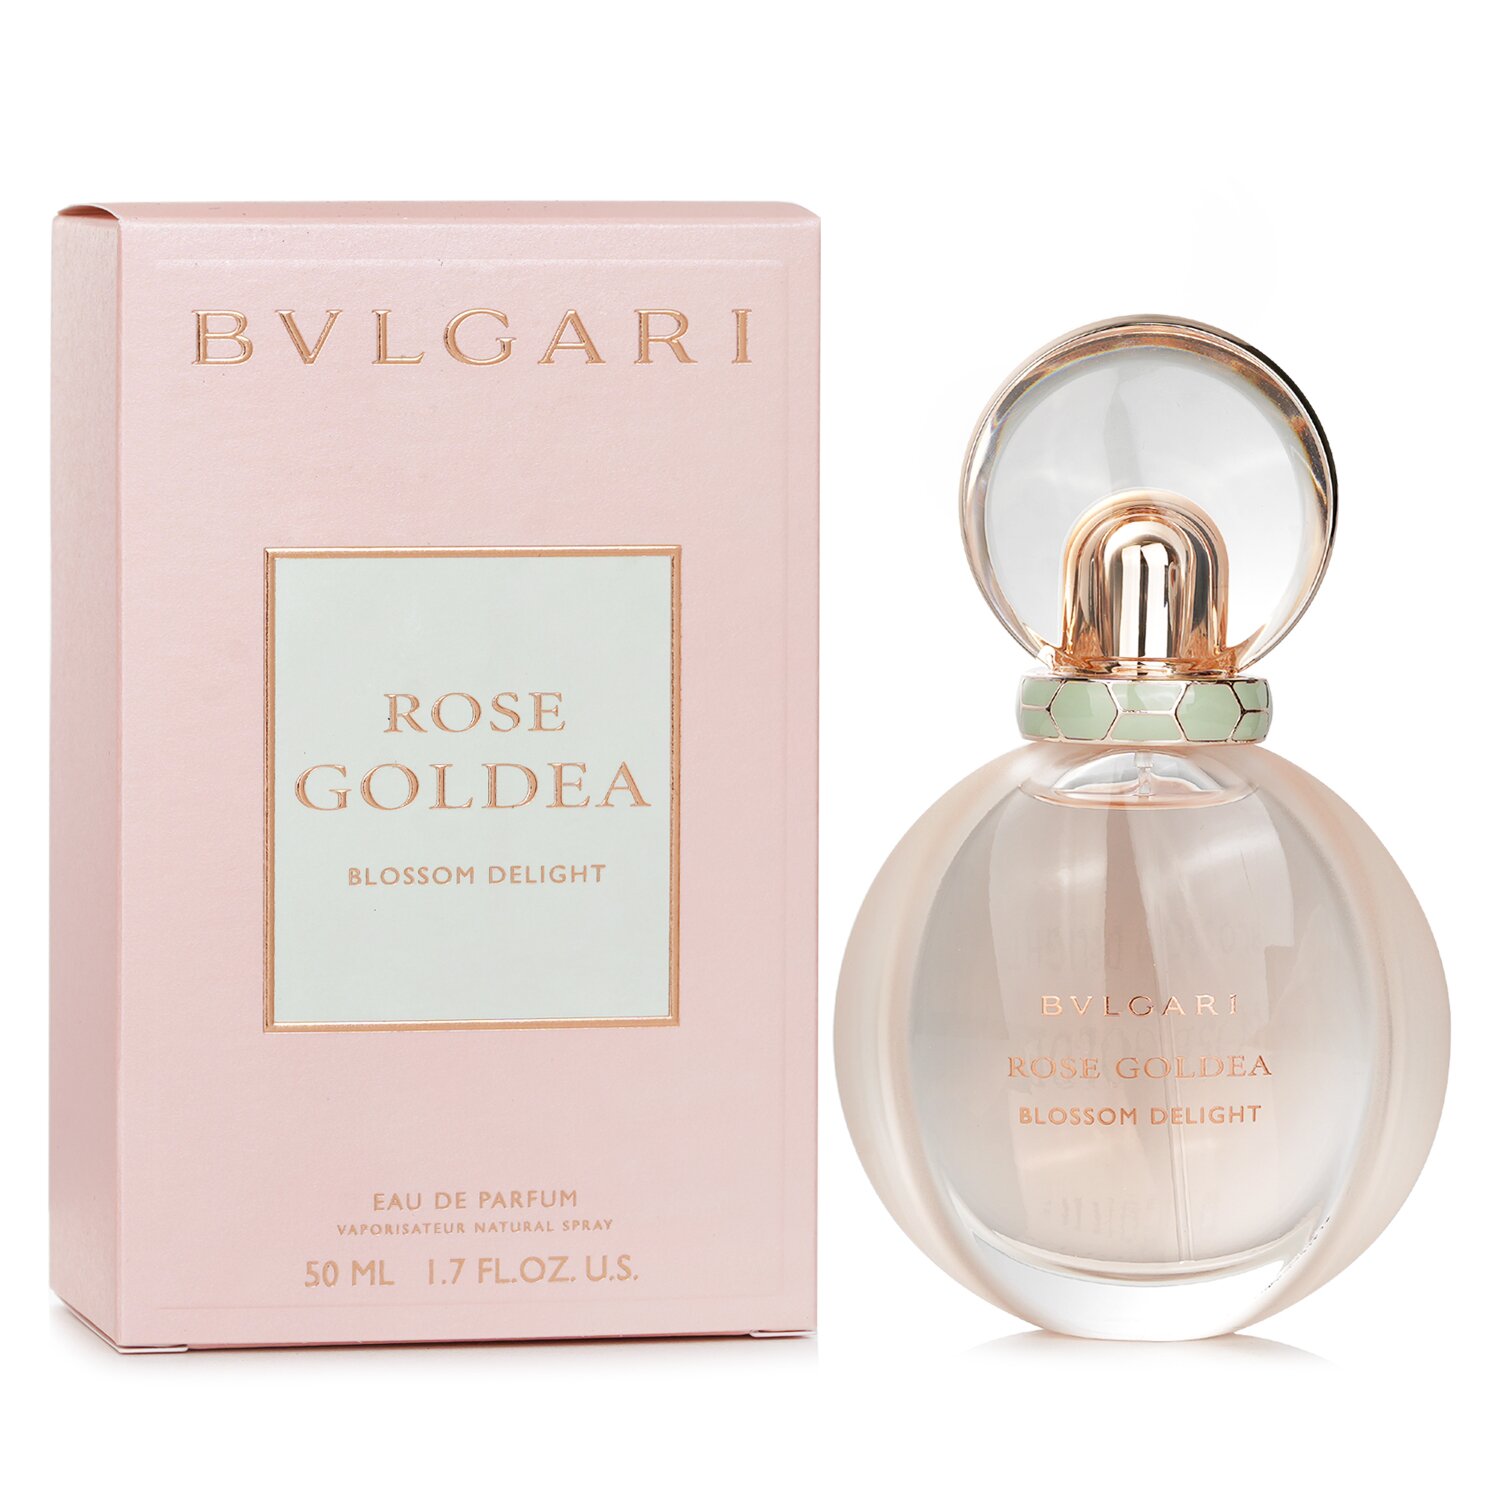 Bvlgari Rose Goldea Blossom Delight Eau De Parfum Spray 50ml/1.7oz